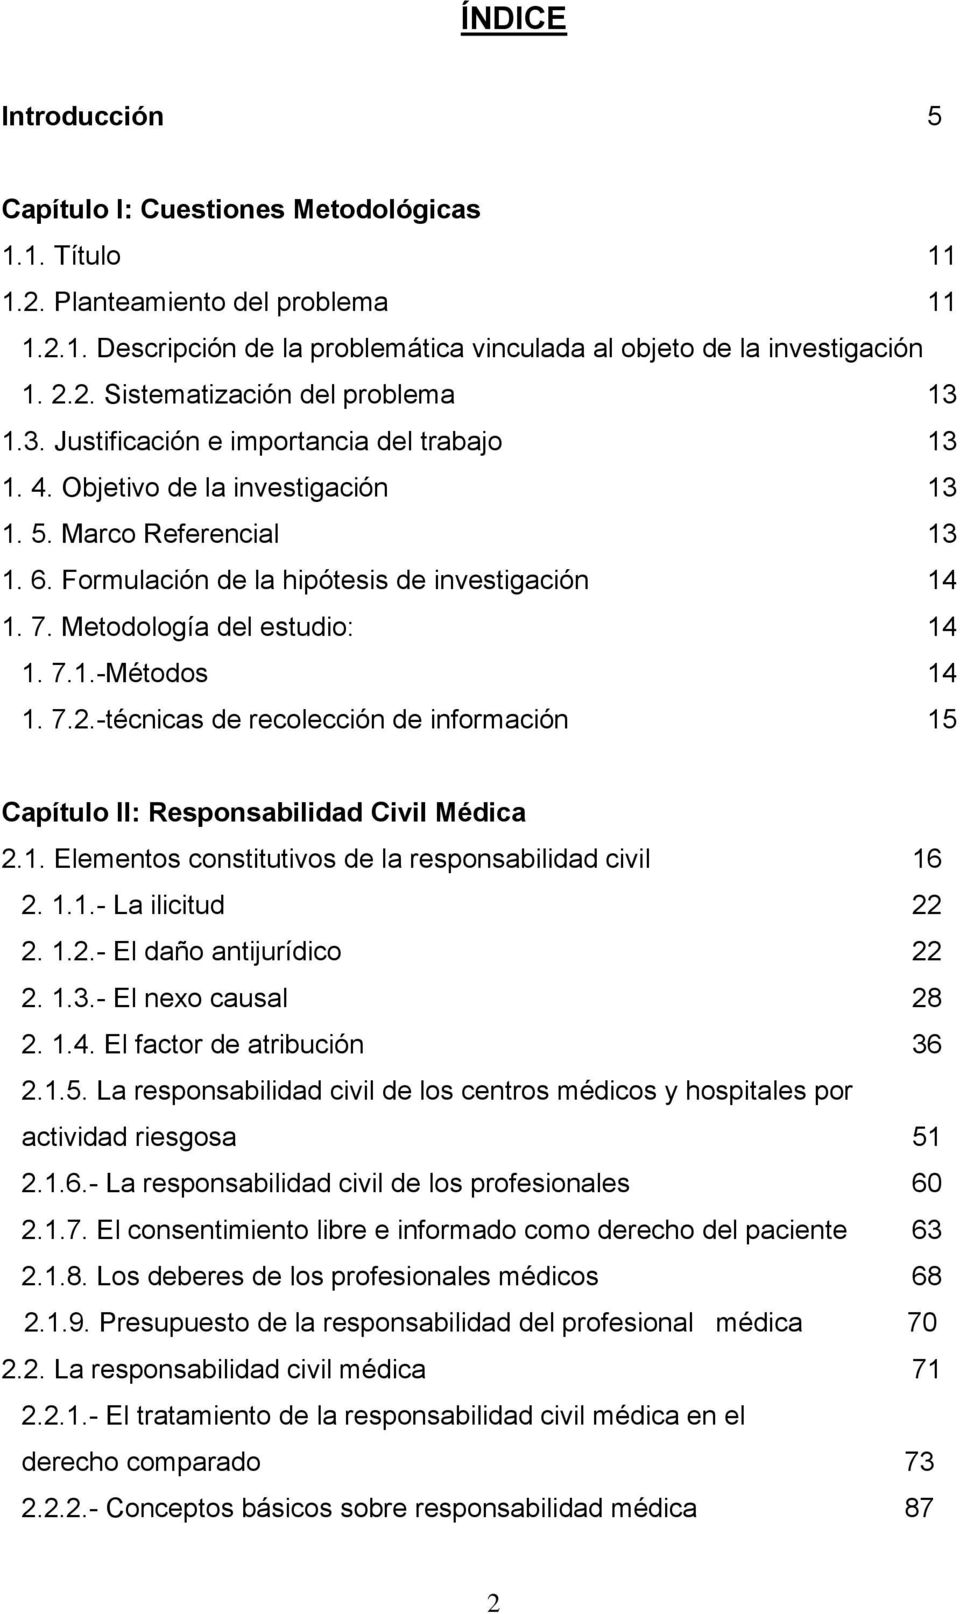 Metodología del estudio: 14 1. 7.1.-Métodos 14 1. 7.2.-técnicas de recolección de información 15 Capítulo II: Responsabilidad Civil Médica 2.1. Elementos constitutivos de la responsabilidad civil 16 2.